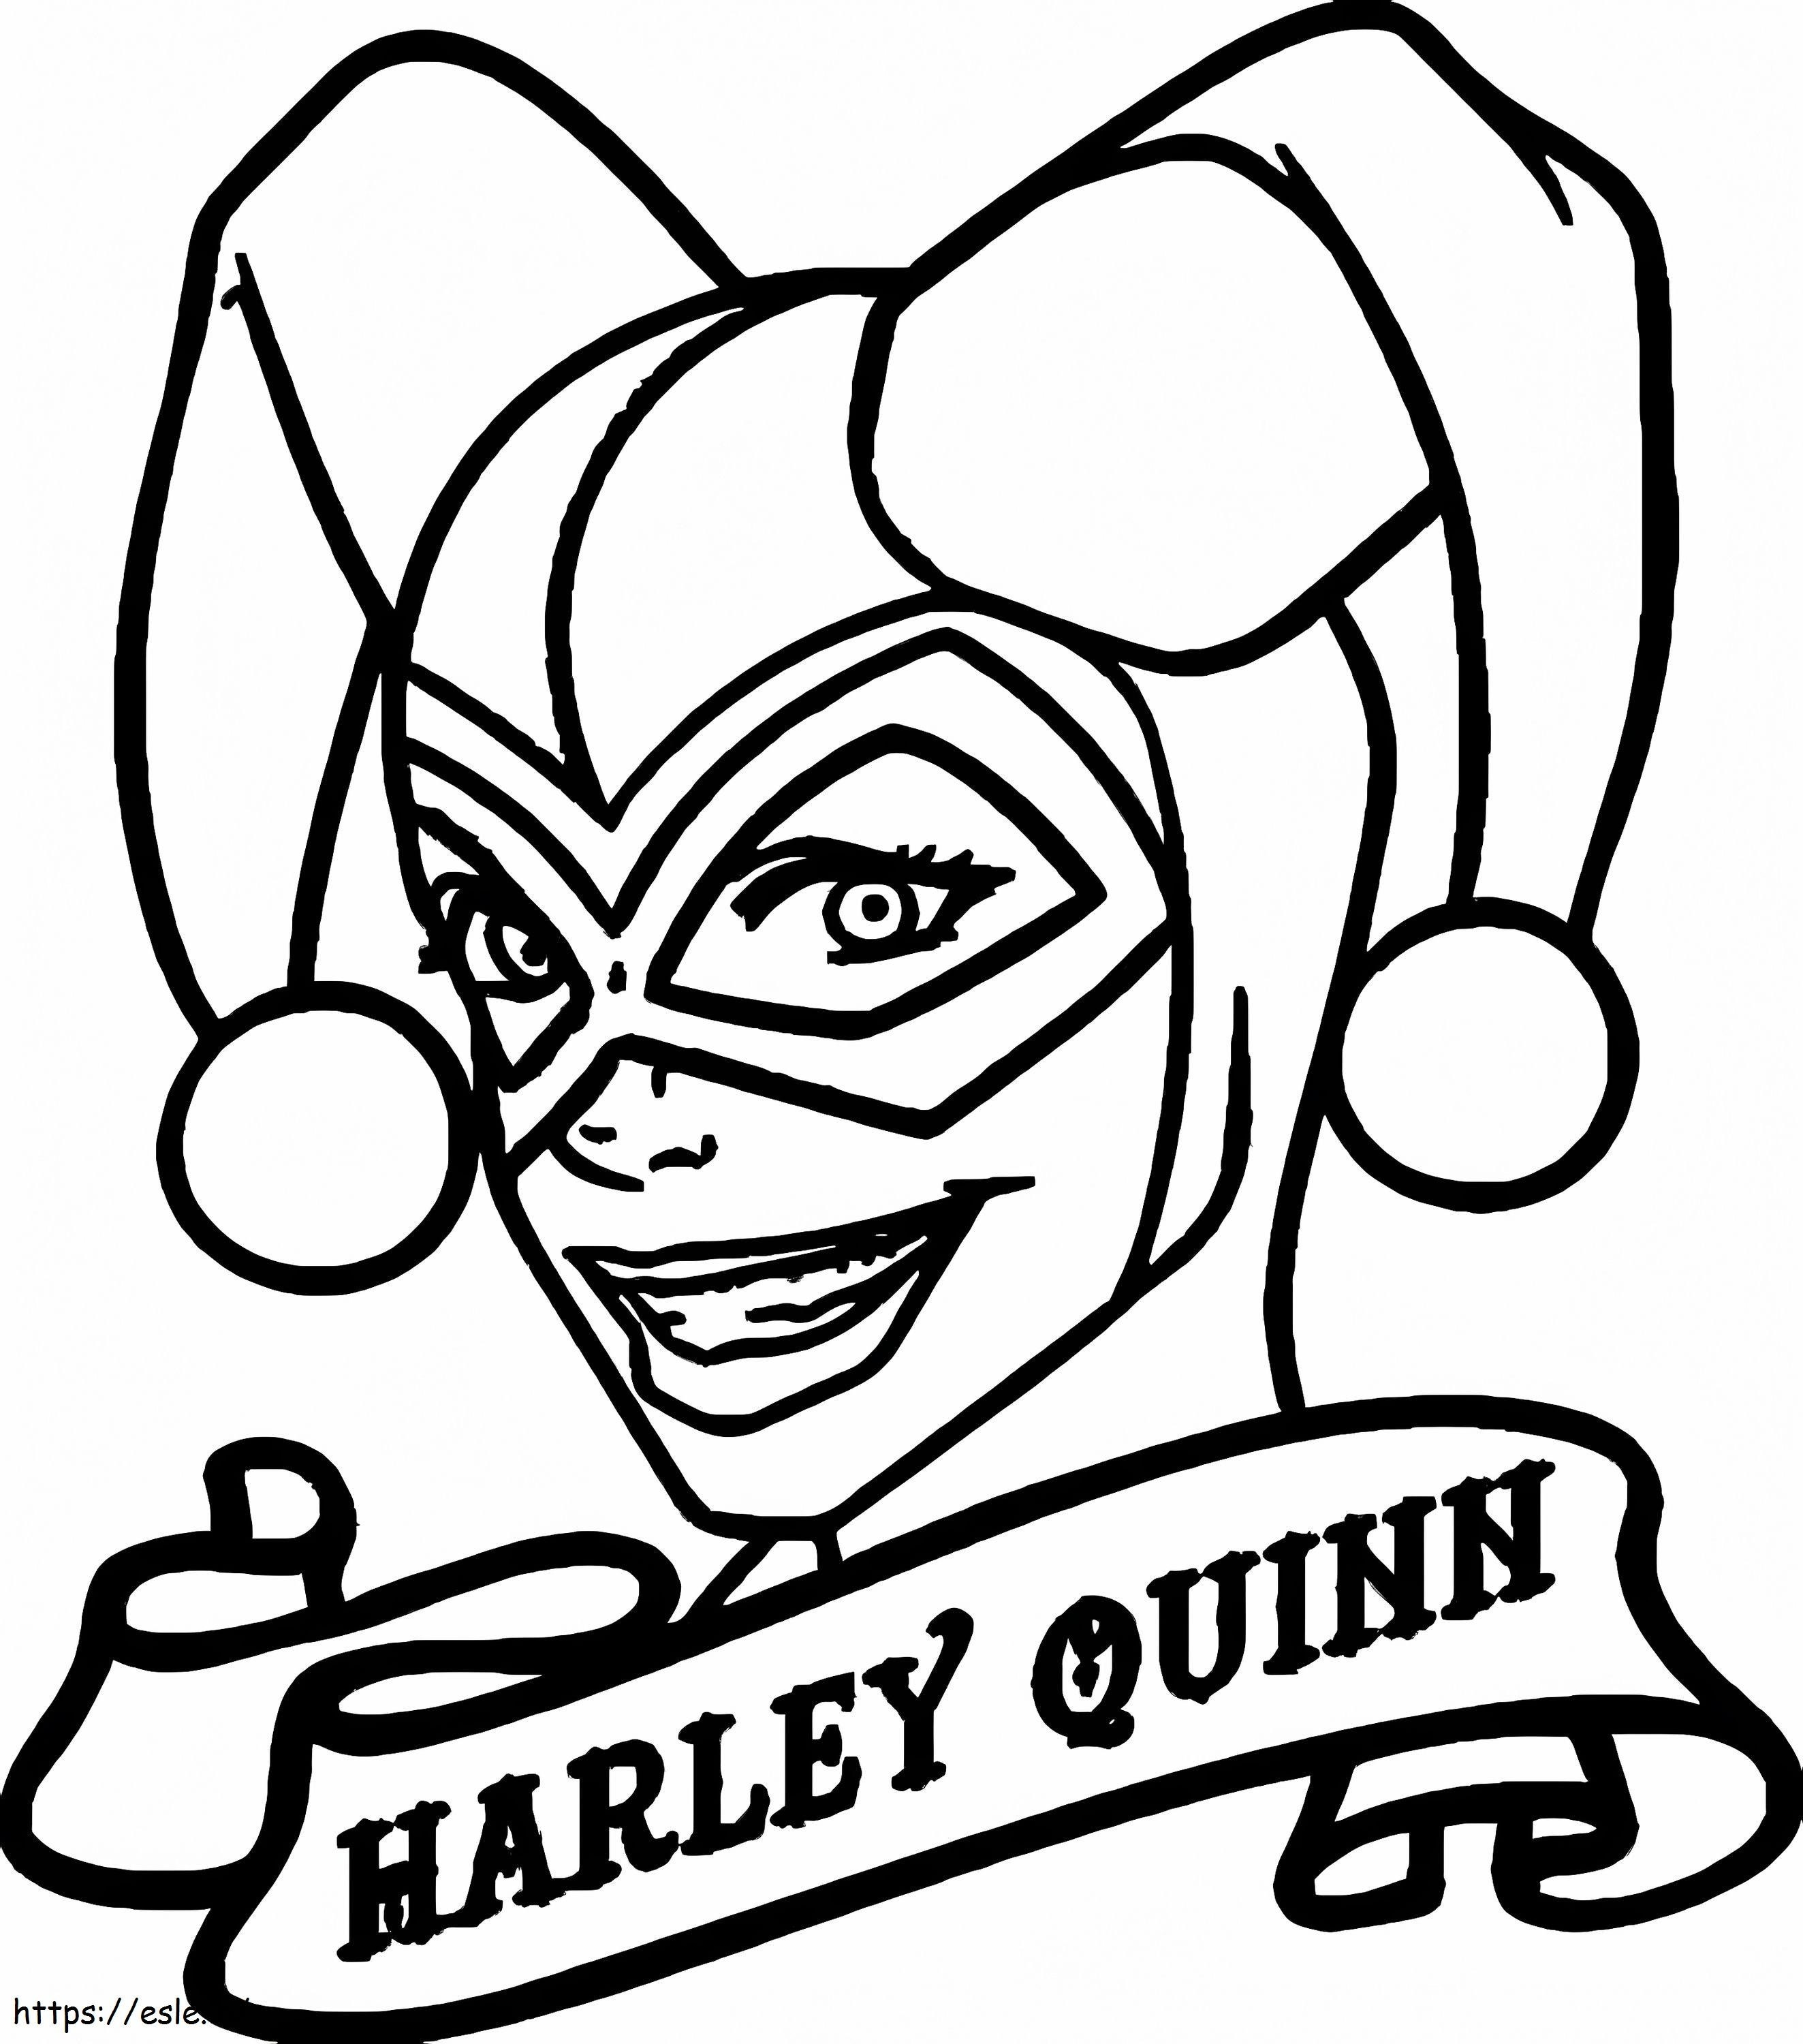 Desenhe a cabeça de Harley Quinn para colorir